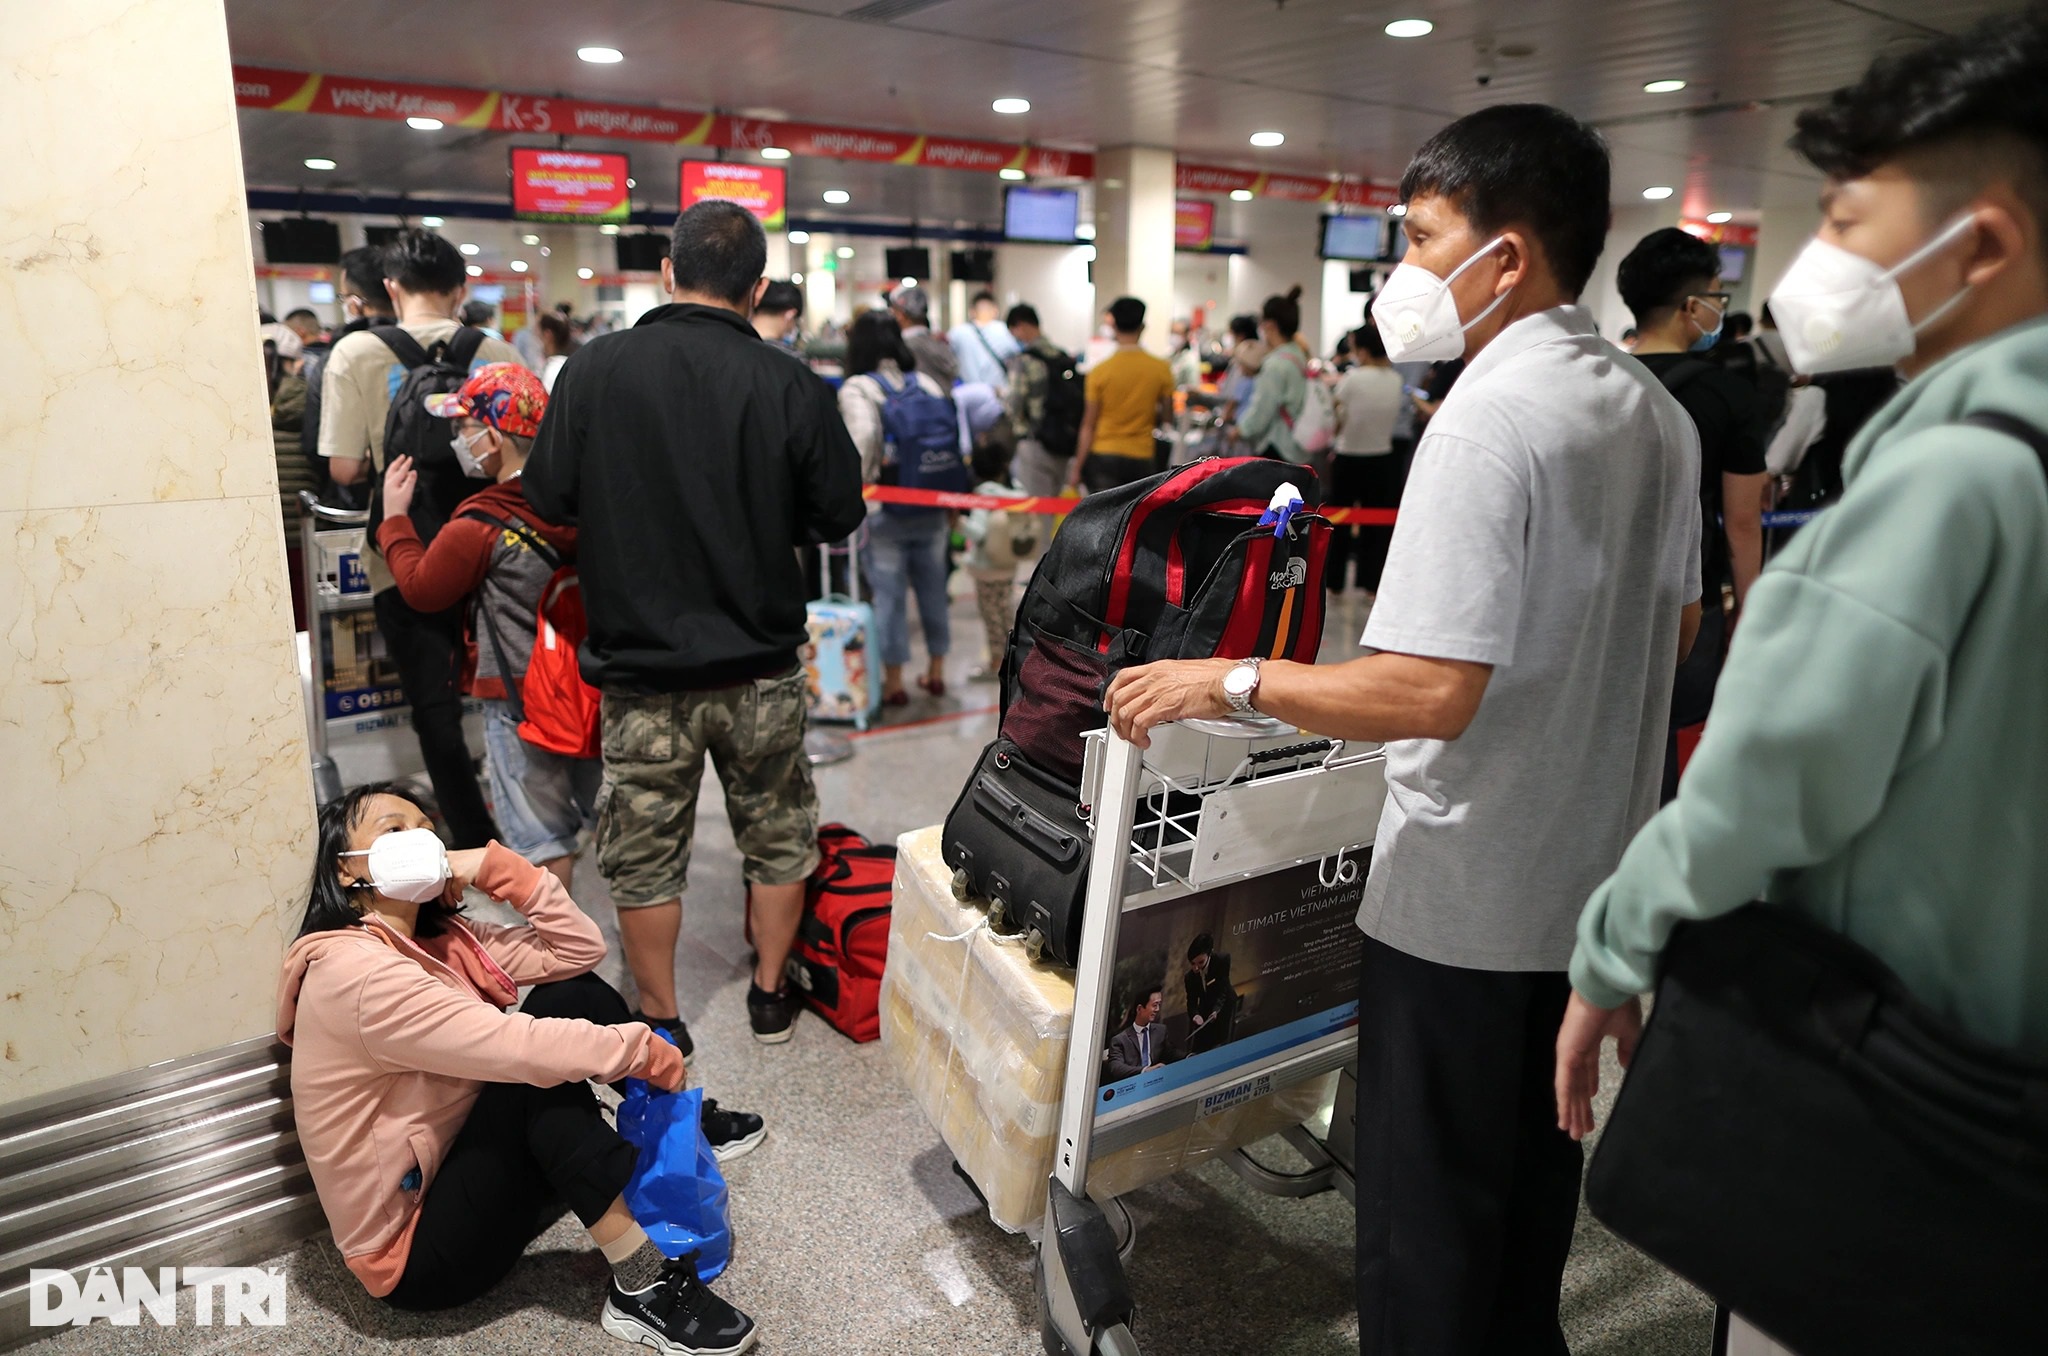 Sân bay Tân Sơn Nhất chật kín người, hành khách vật vờ chờ chuyến bay - 7